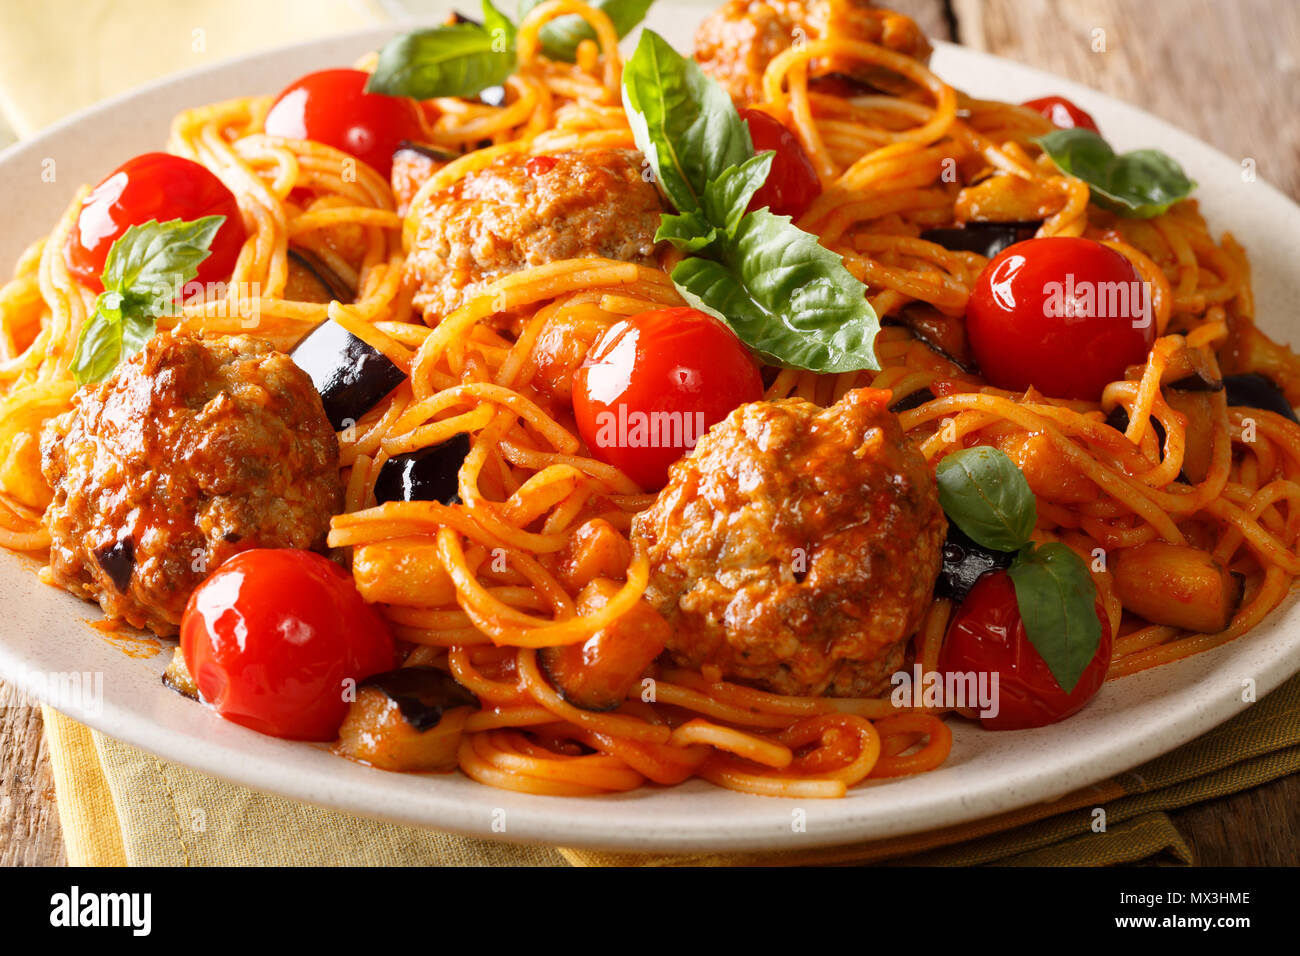 Köstliche traditionelle Pasta Spaghetti mit Fleischbällchen, Auberginen in Tomatensauce close-up auf einem Teller auf dem Tisch. Horizontale Stockfoto